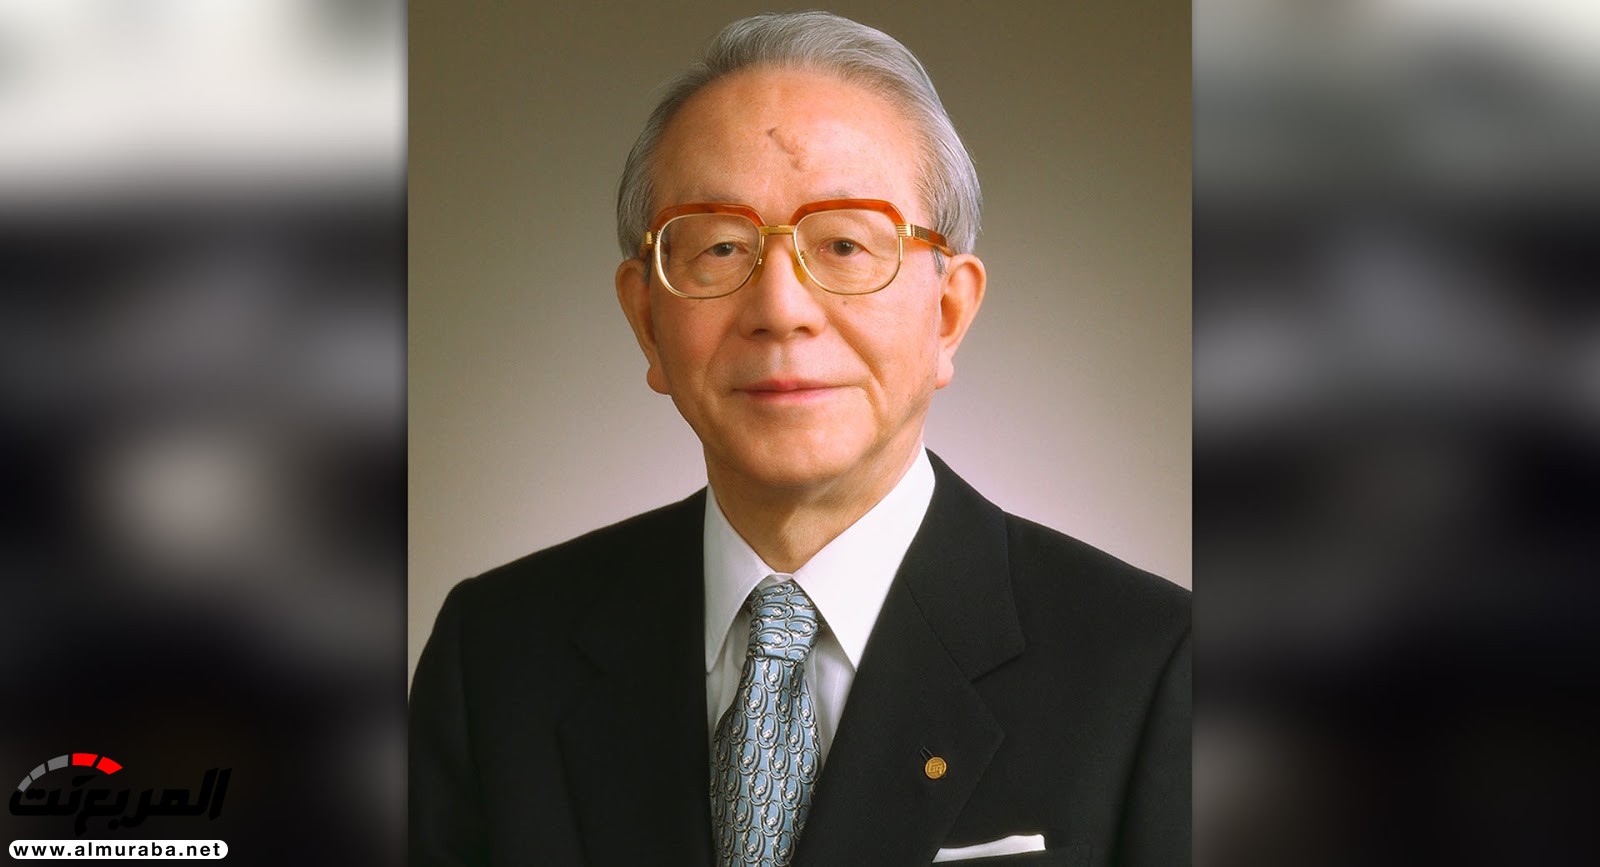 وفاة رئيس تويوتا السابق تاتسورو تويودا عن عمر 88 عاما 3